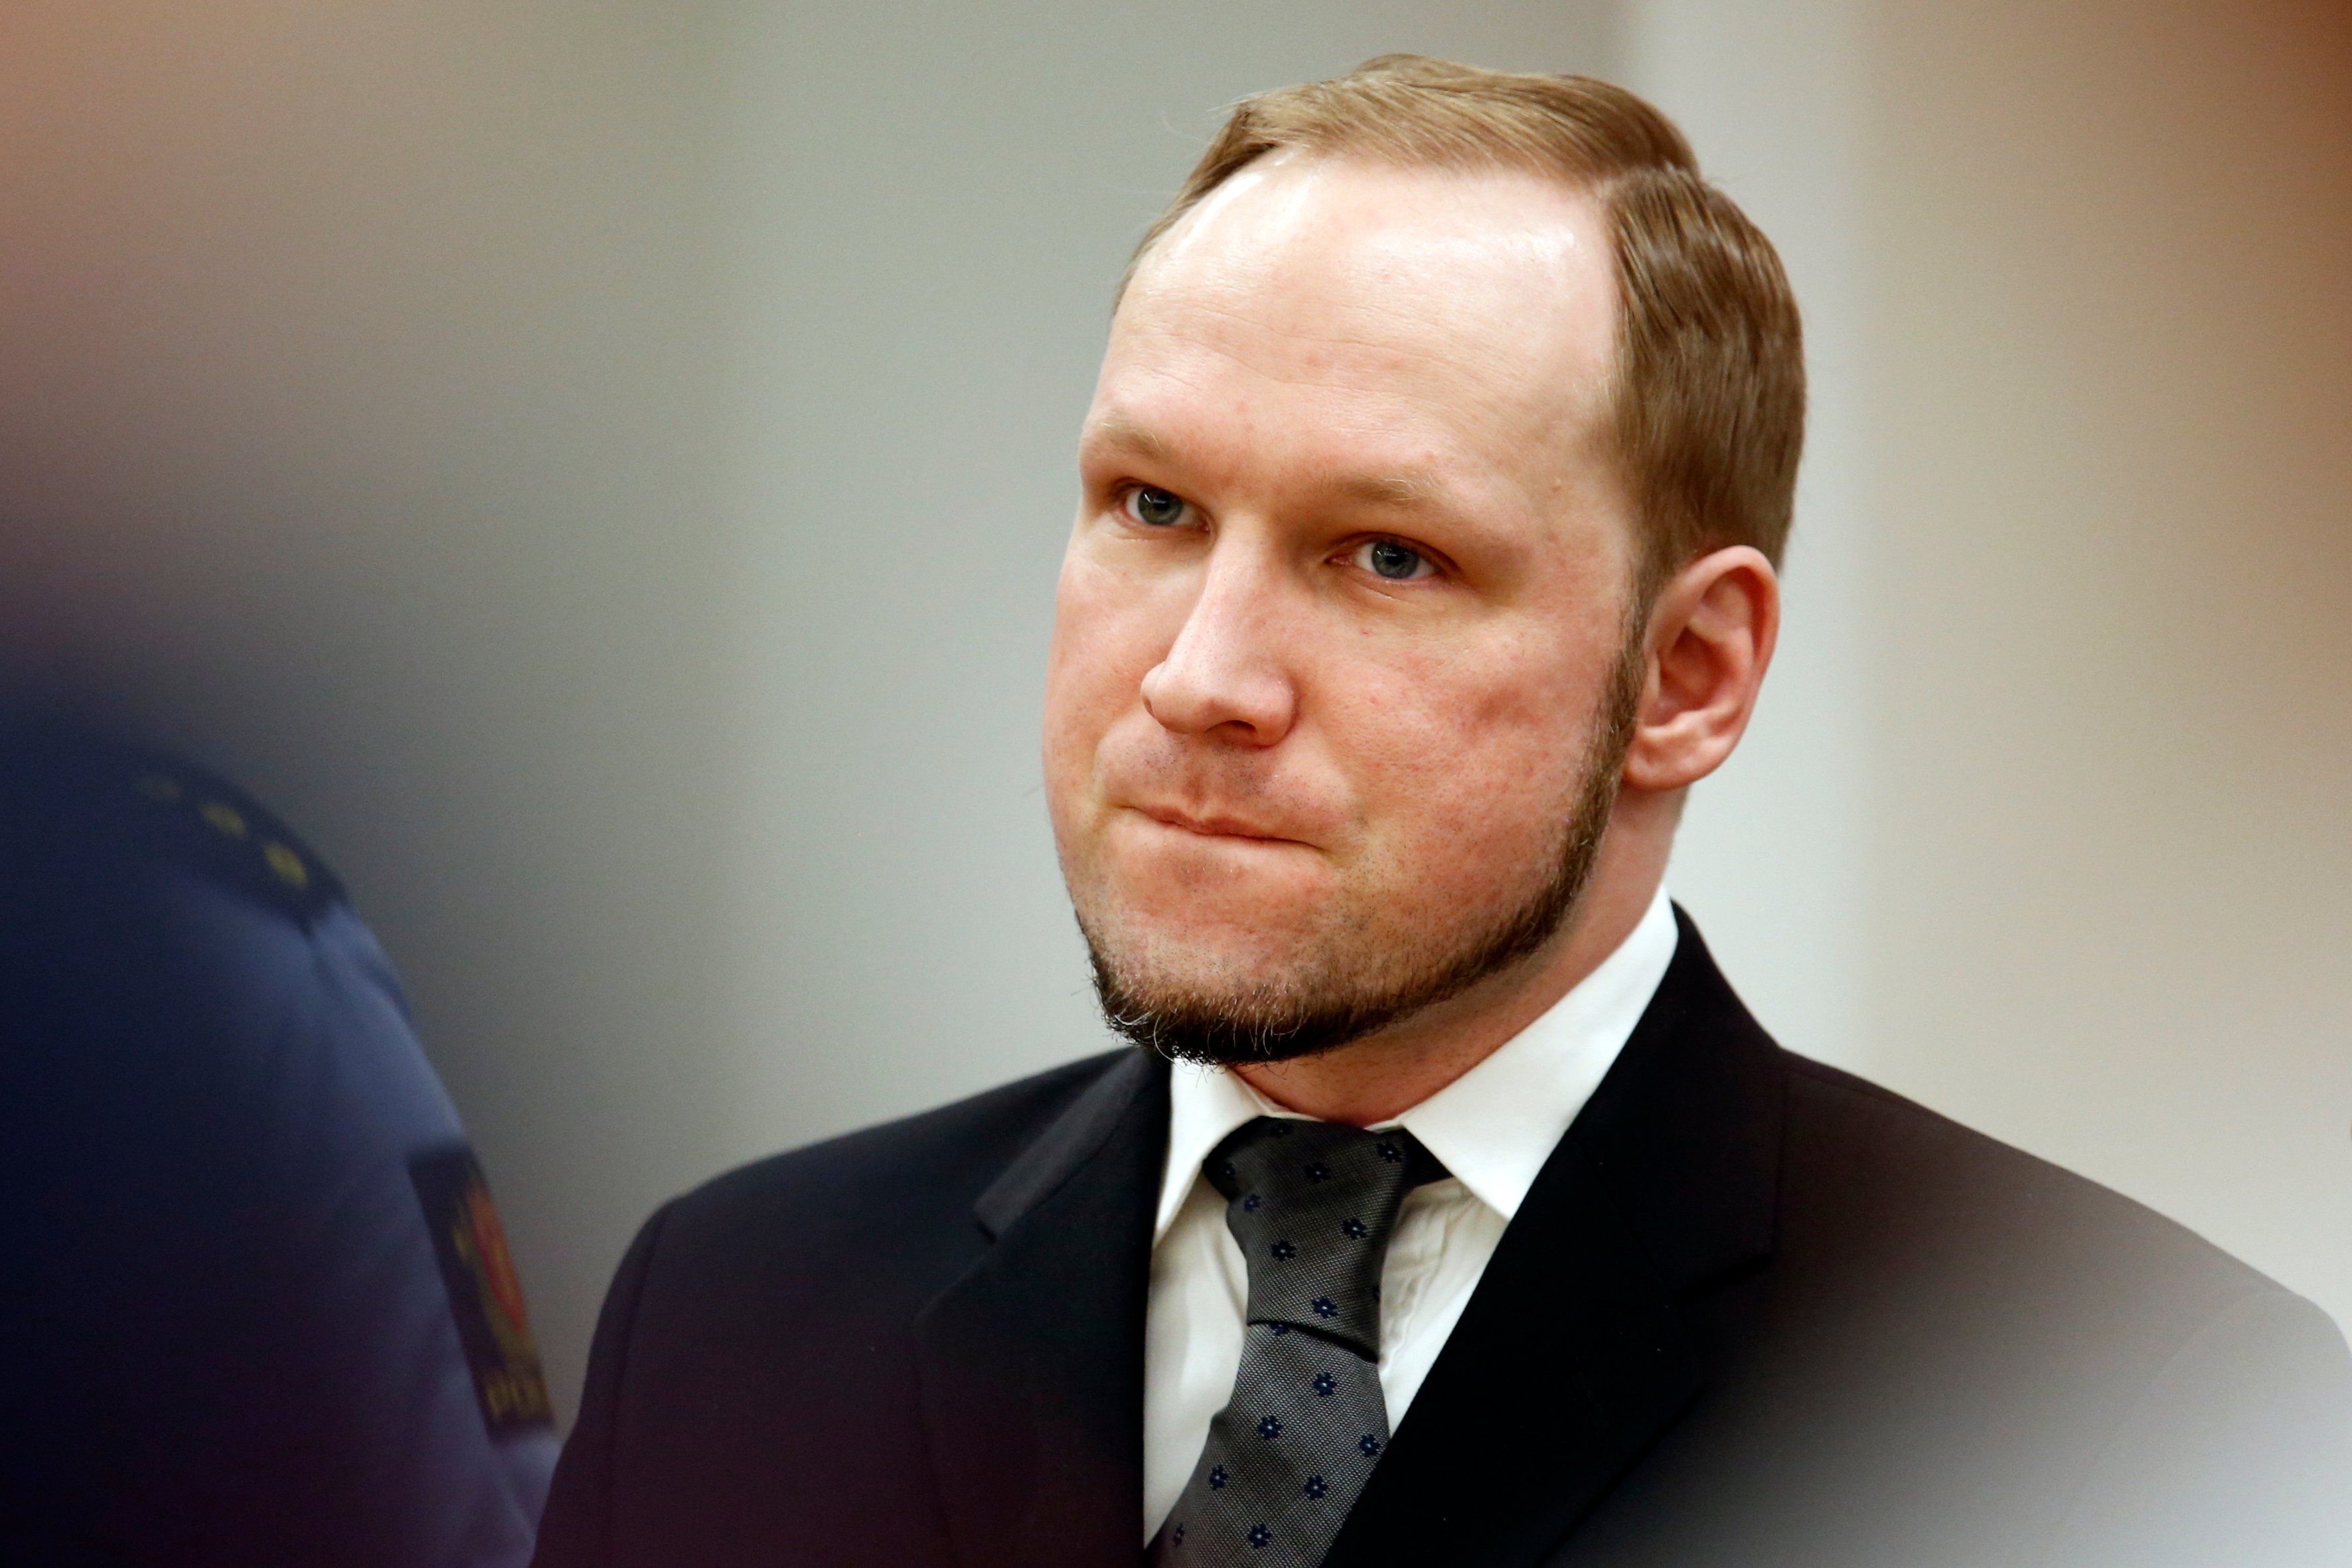 Anders Behring Breivik, Hotad, Utøya, Norge